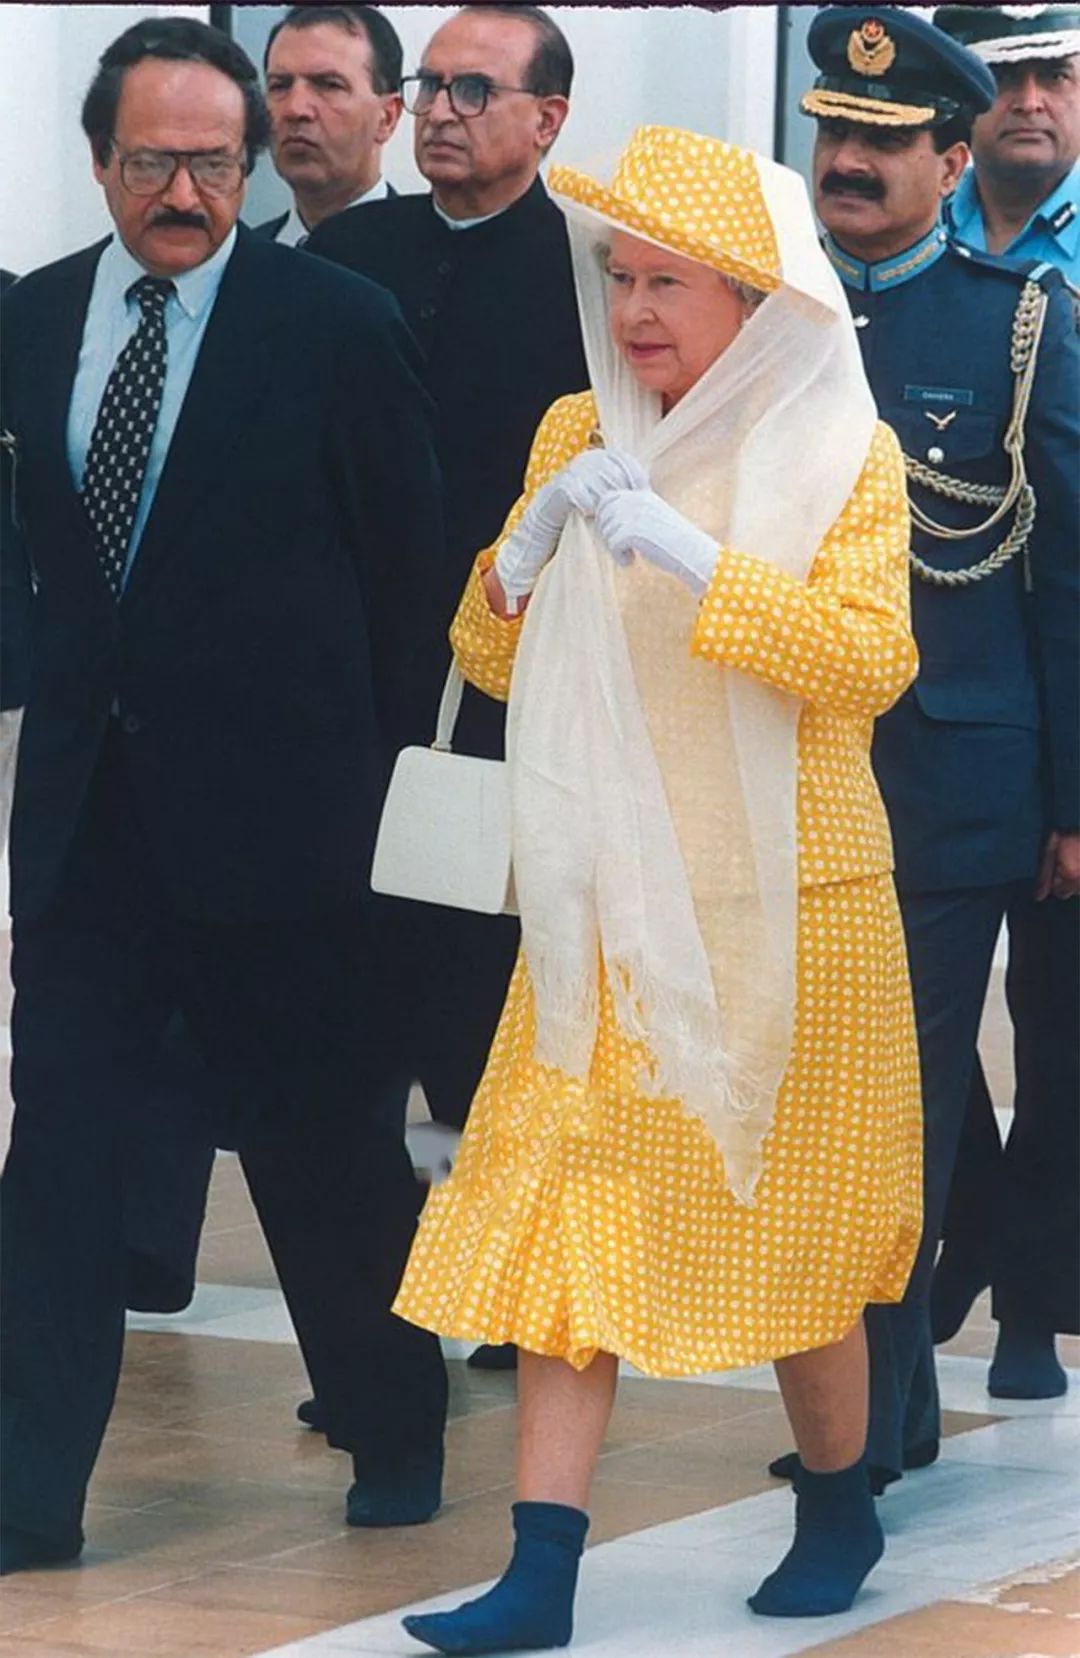 伊丽莎白女王曾经访问过印度,当时她穿了一身橘黄色带有波点的礼服裙